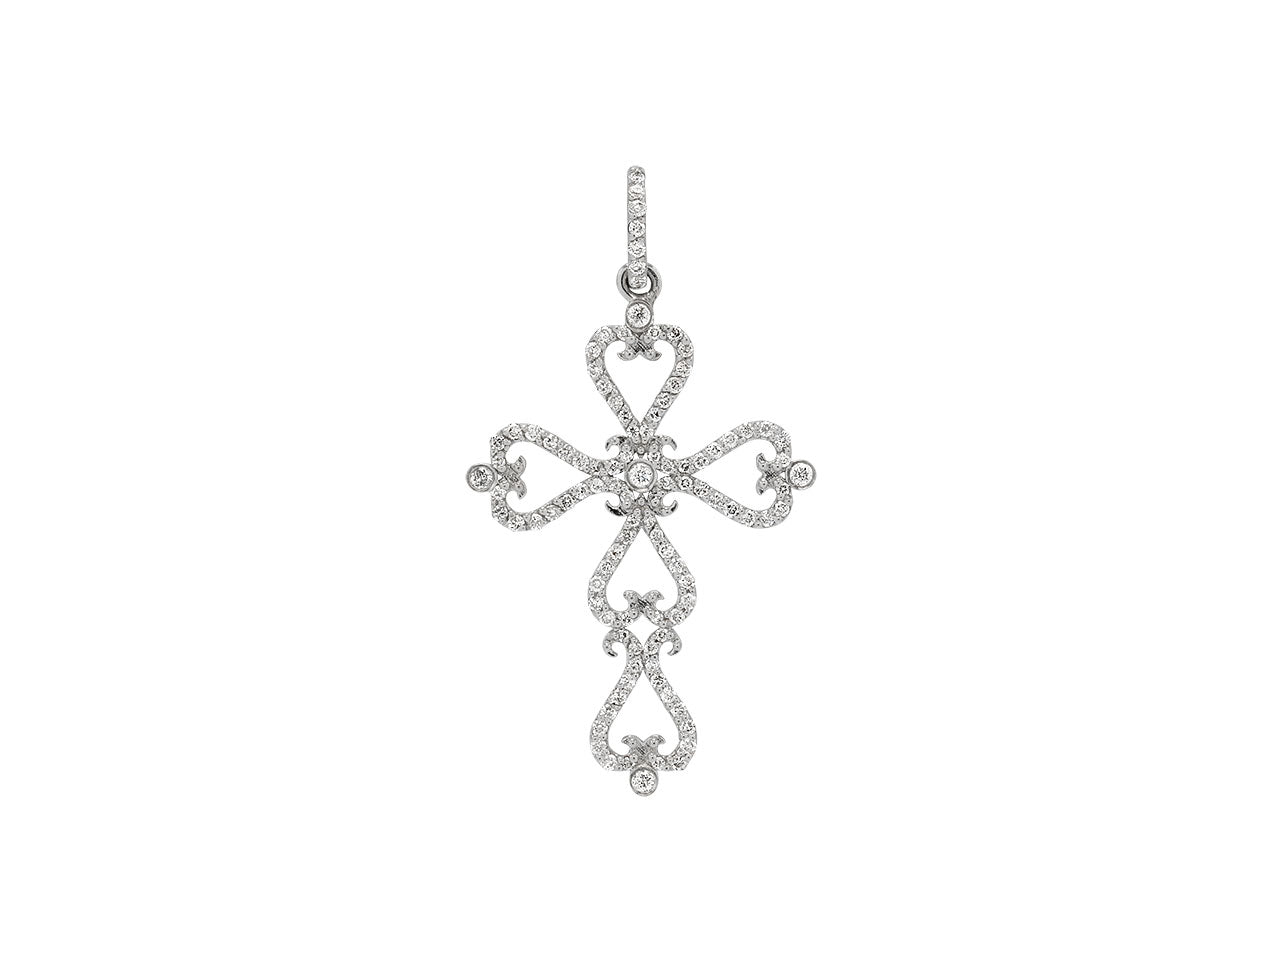 Rhonda Faber Green Diamond Cross Pendant in 18K White Gold